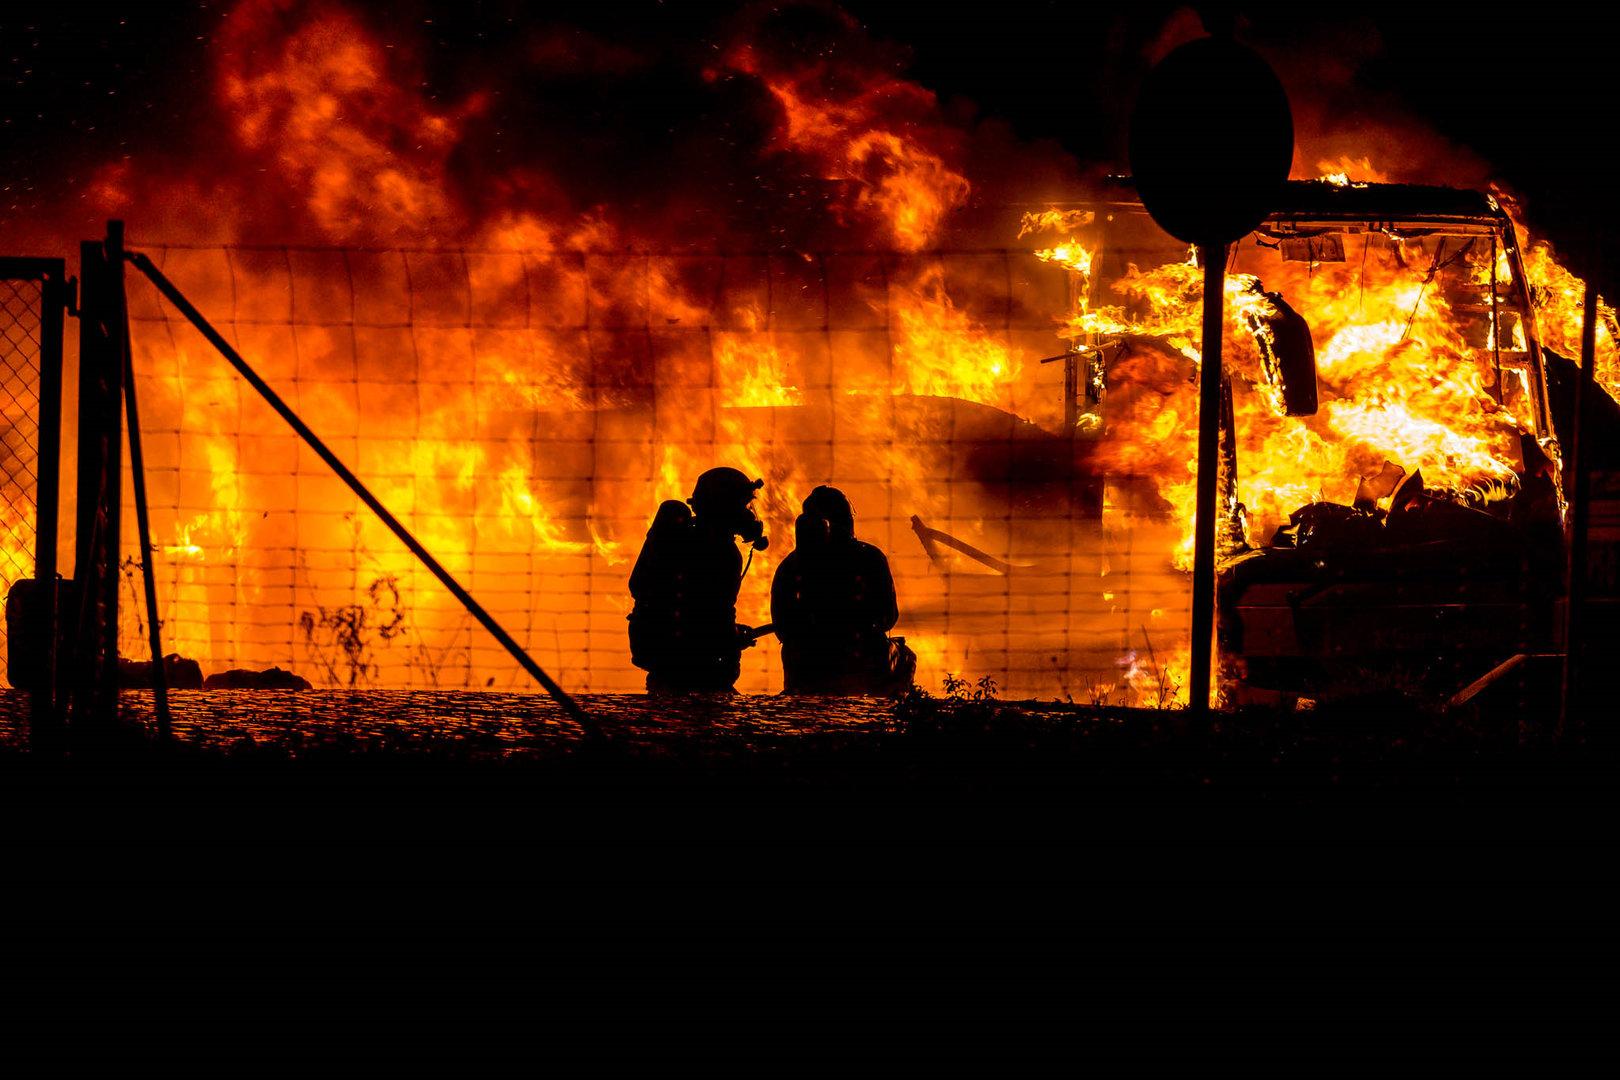 Deutschland: 48 Menschen aus brennendem Flixbus gerettet